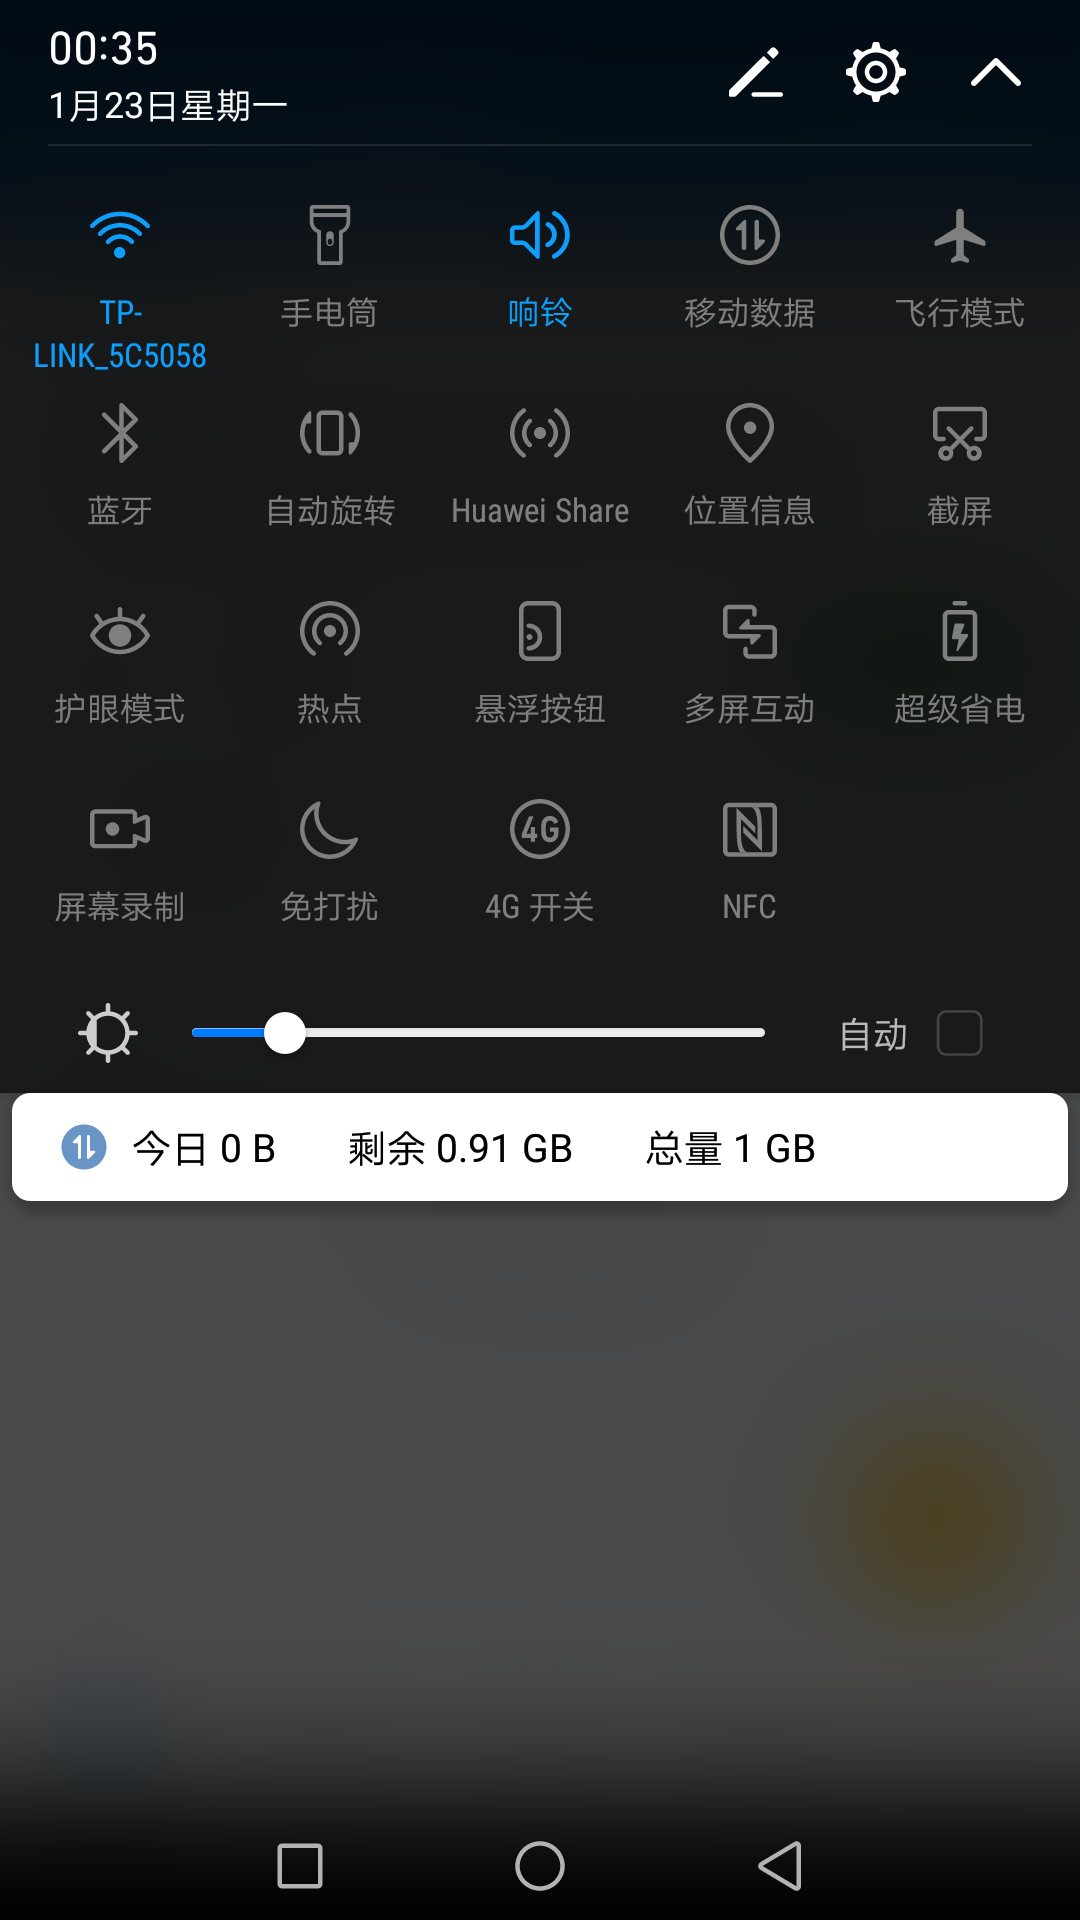 华为手机Mate8有NFC功能吗? - 钱儿钱的回答